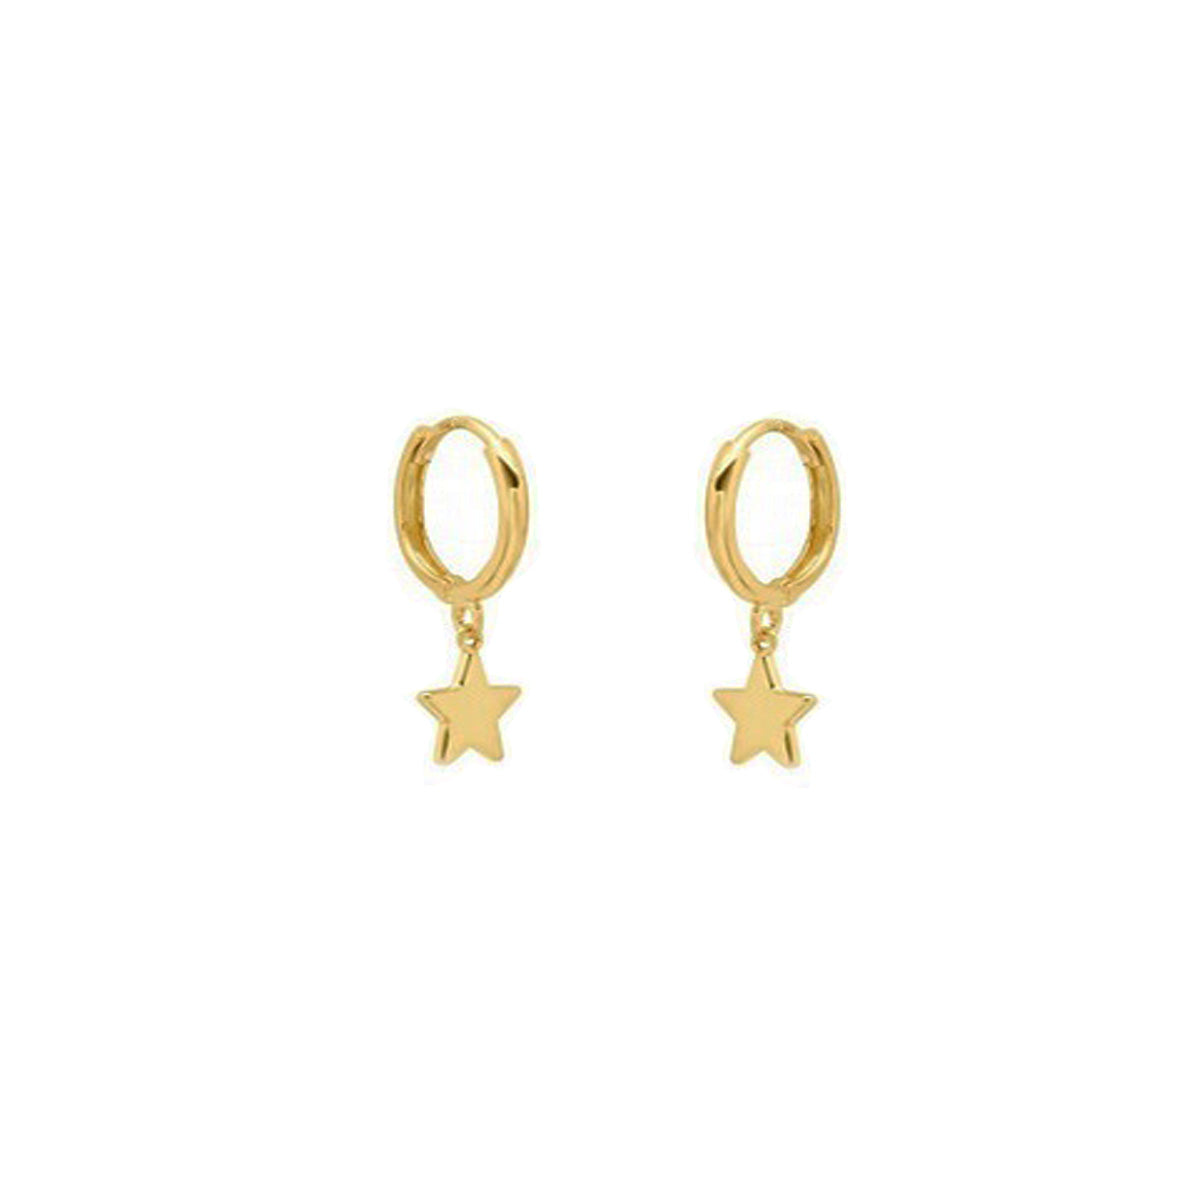 EHG0201, Gold Earrings, Huggies, Star